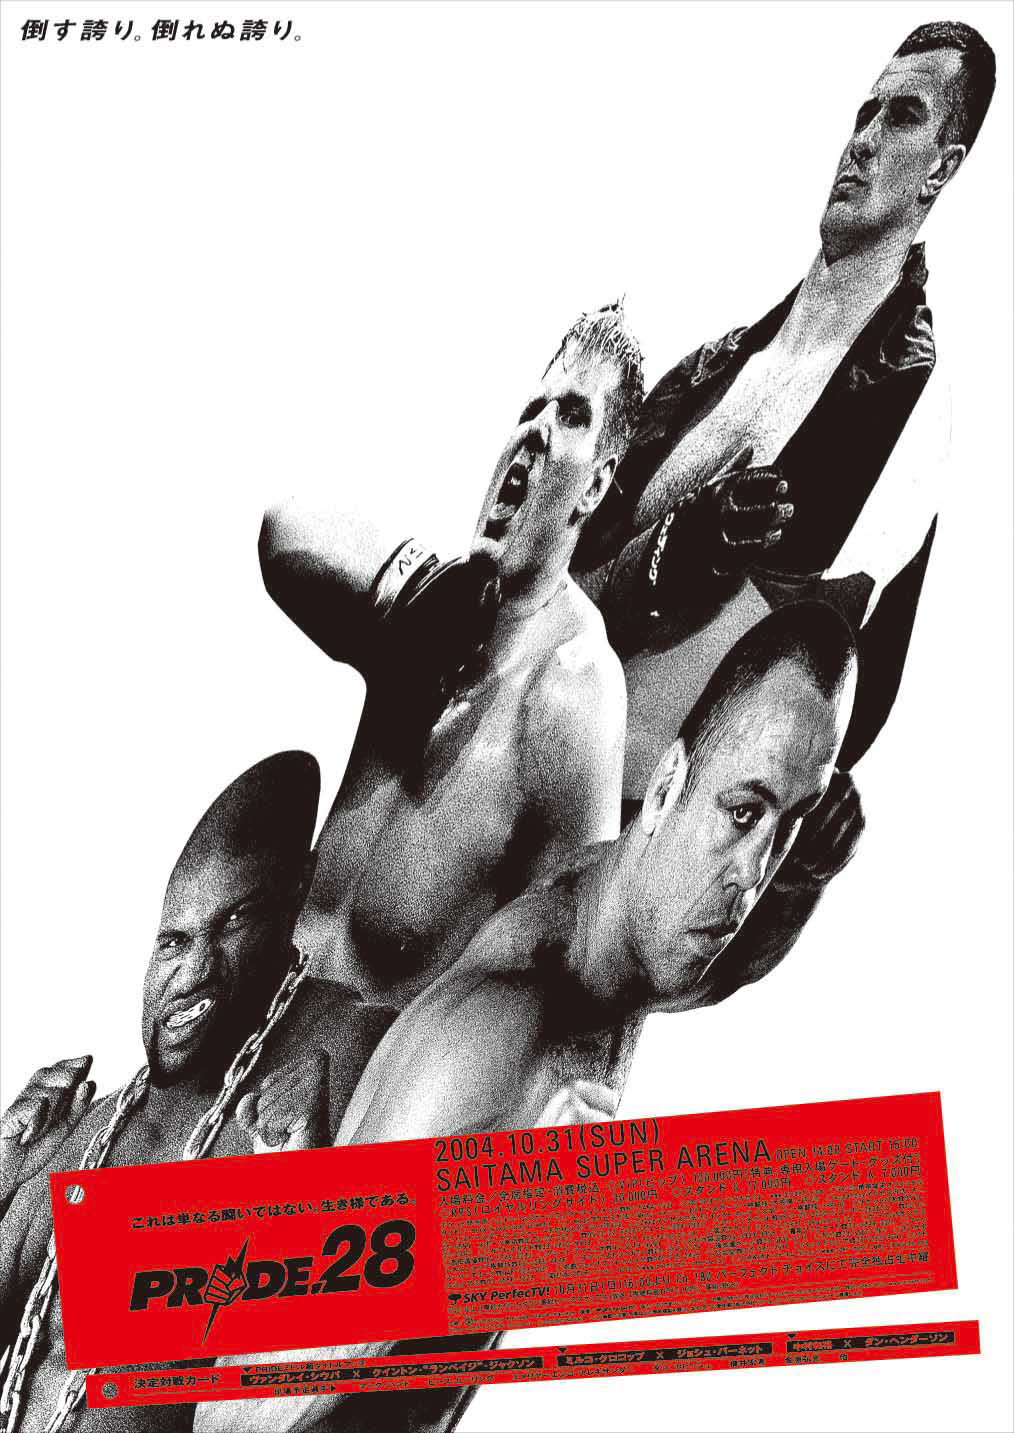 pride MMA poster